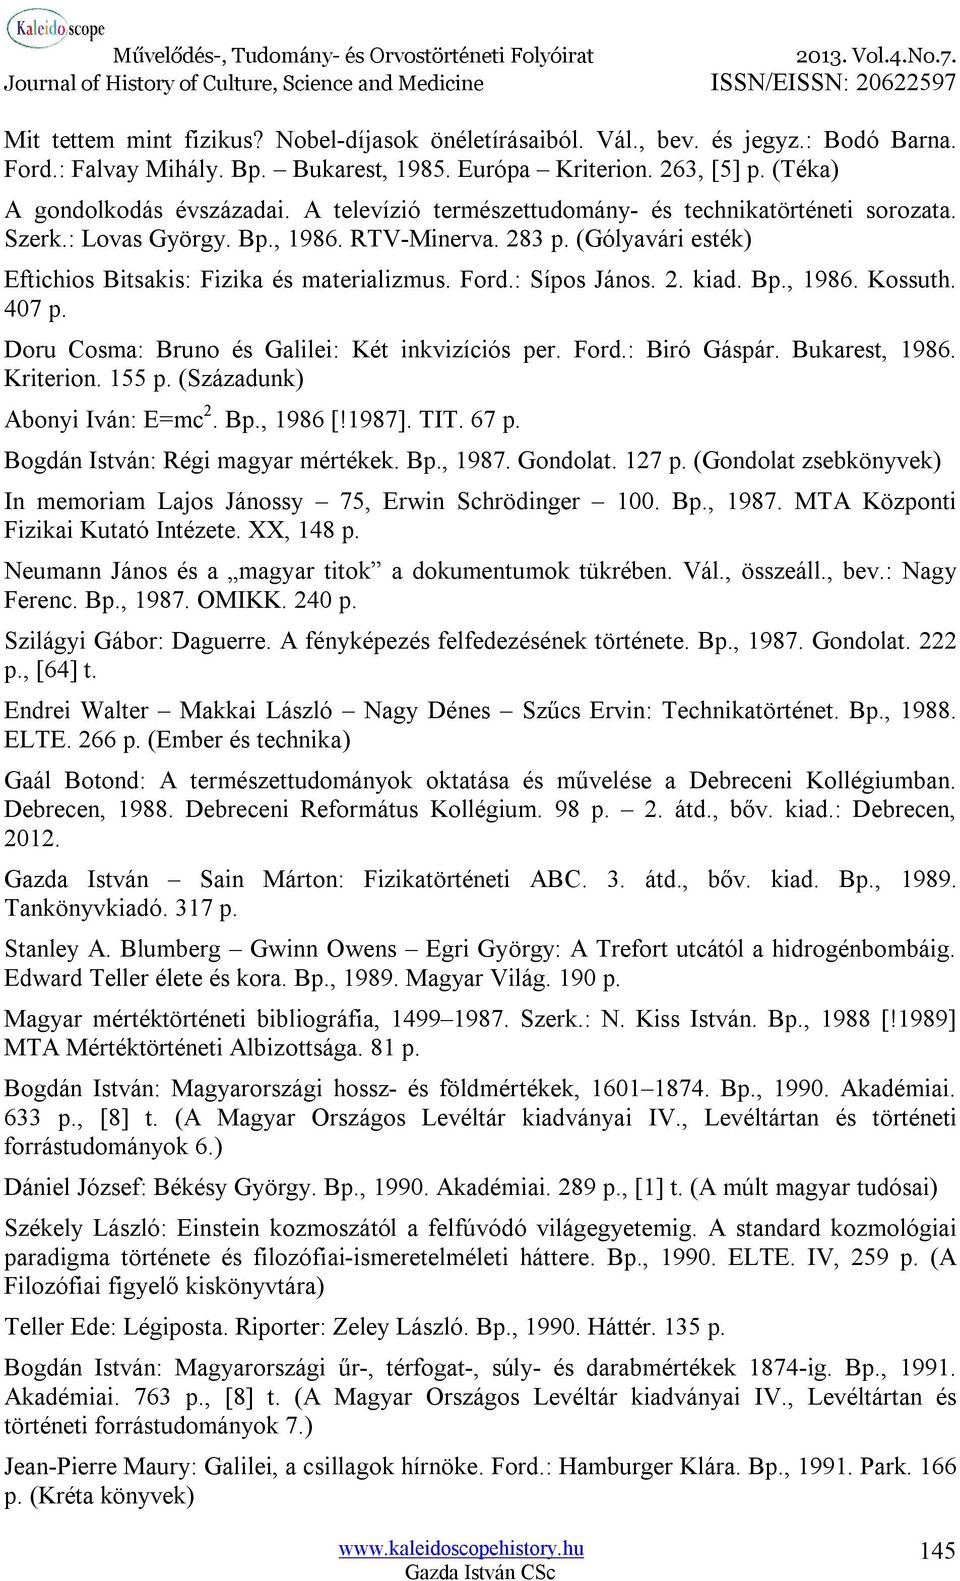 Bp., 1986. Kossuth. 407 p. Doru Cosma: Bruno és Galilei: Két inkvizíciós per. Ford.: Biró Gáspár. Bukarest, 1986. Kriterion. 155 p. (Századunk) Abonyi Iván: E=mc 2. Bp., 1986 [!1987]. TIT. 67 p.